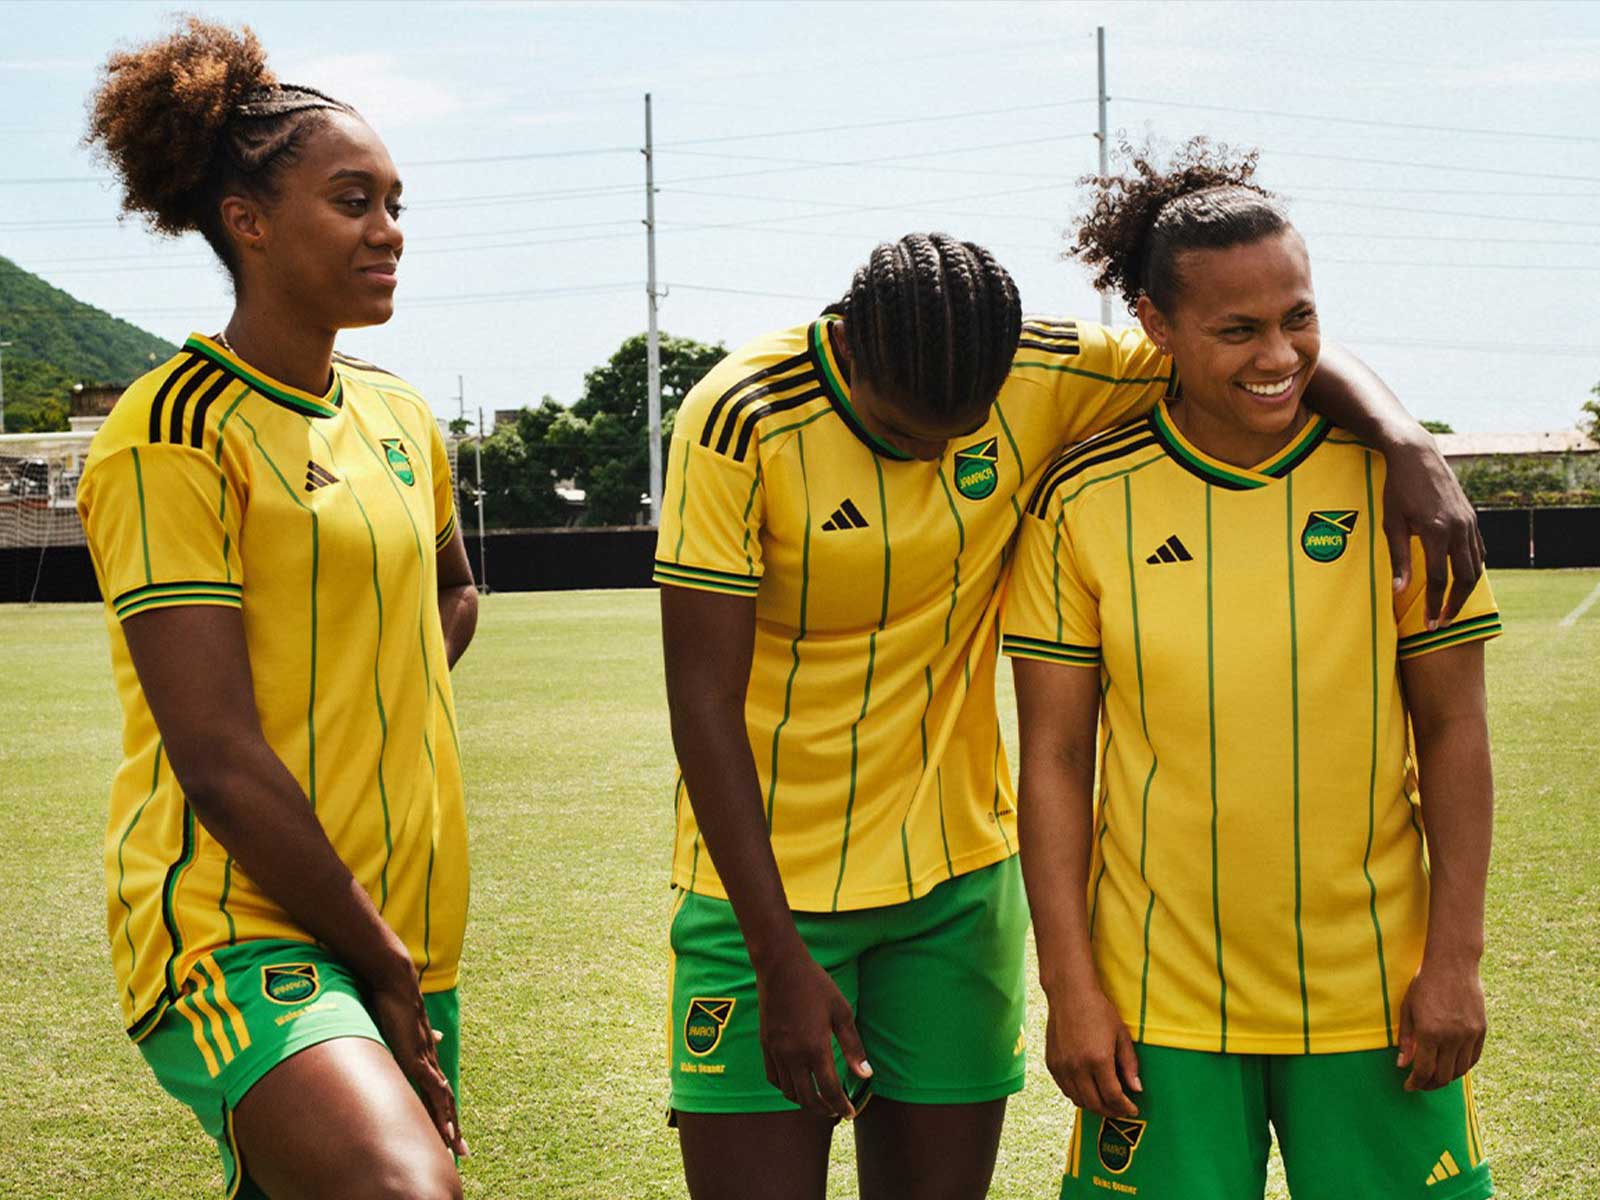 Wales Bonner se une a adidas para diseñar la equipación de fútbol de Jamaica